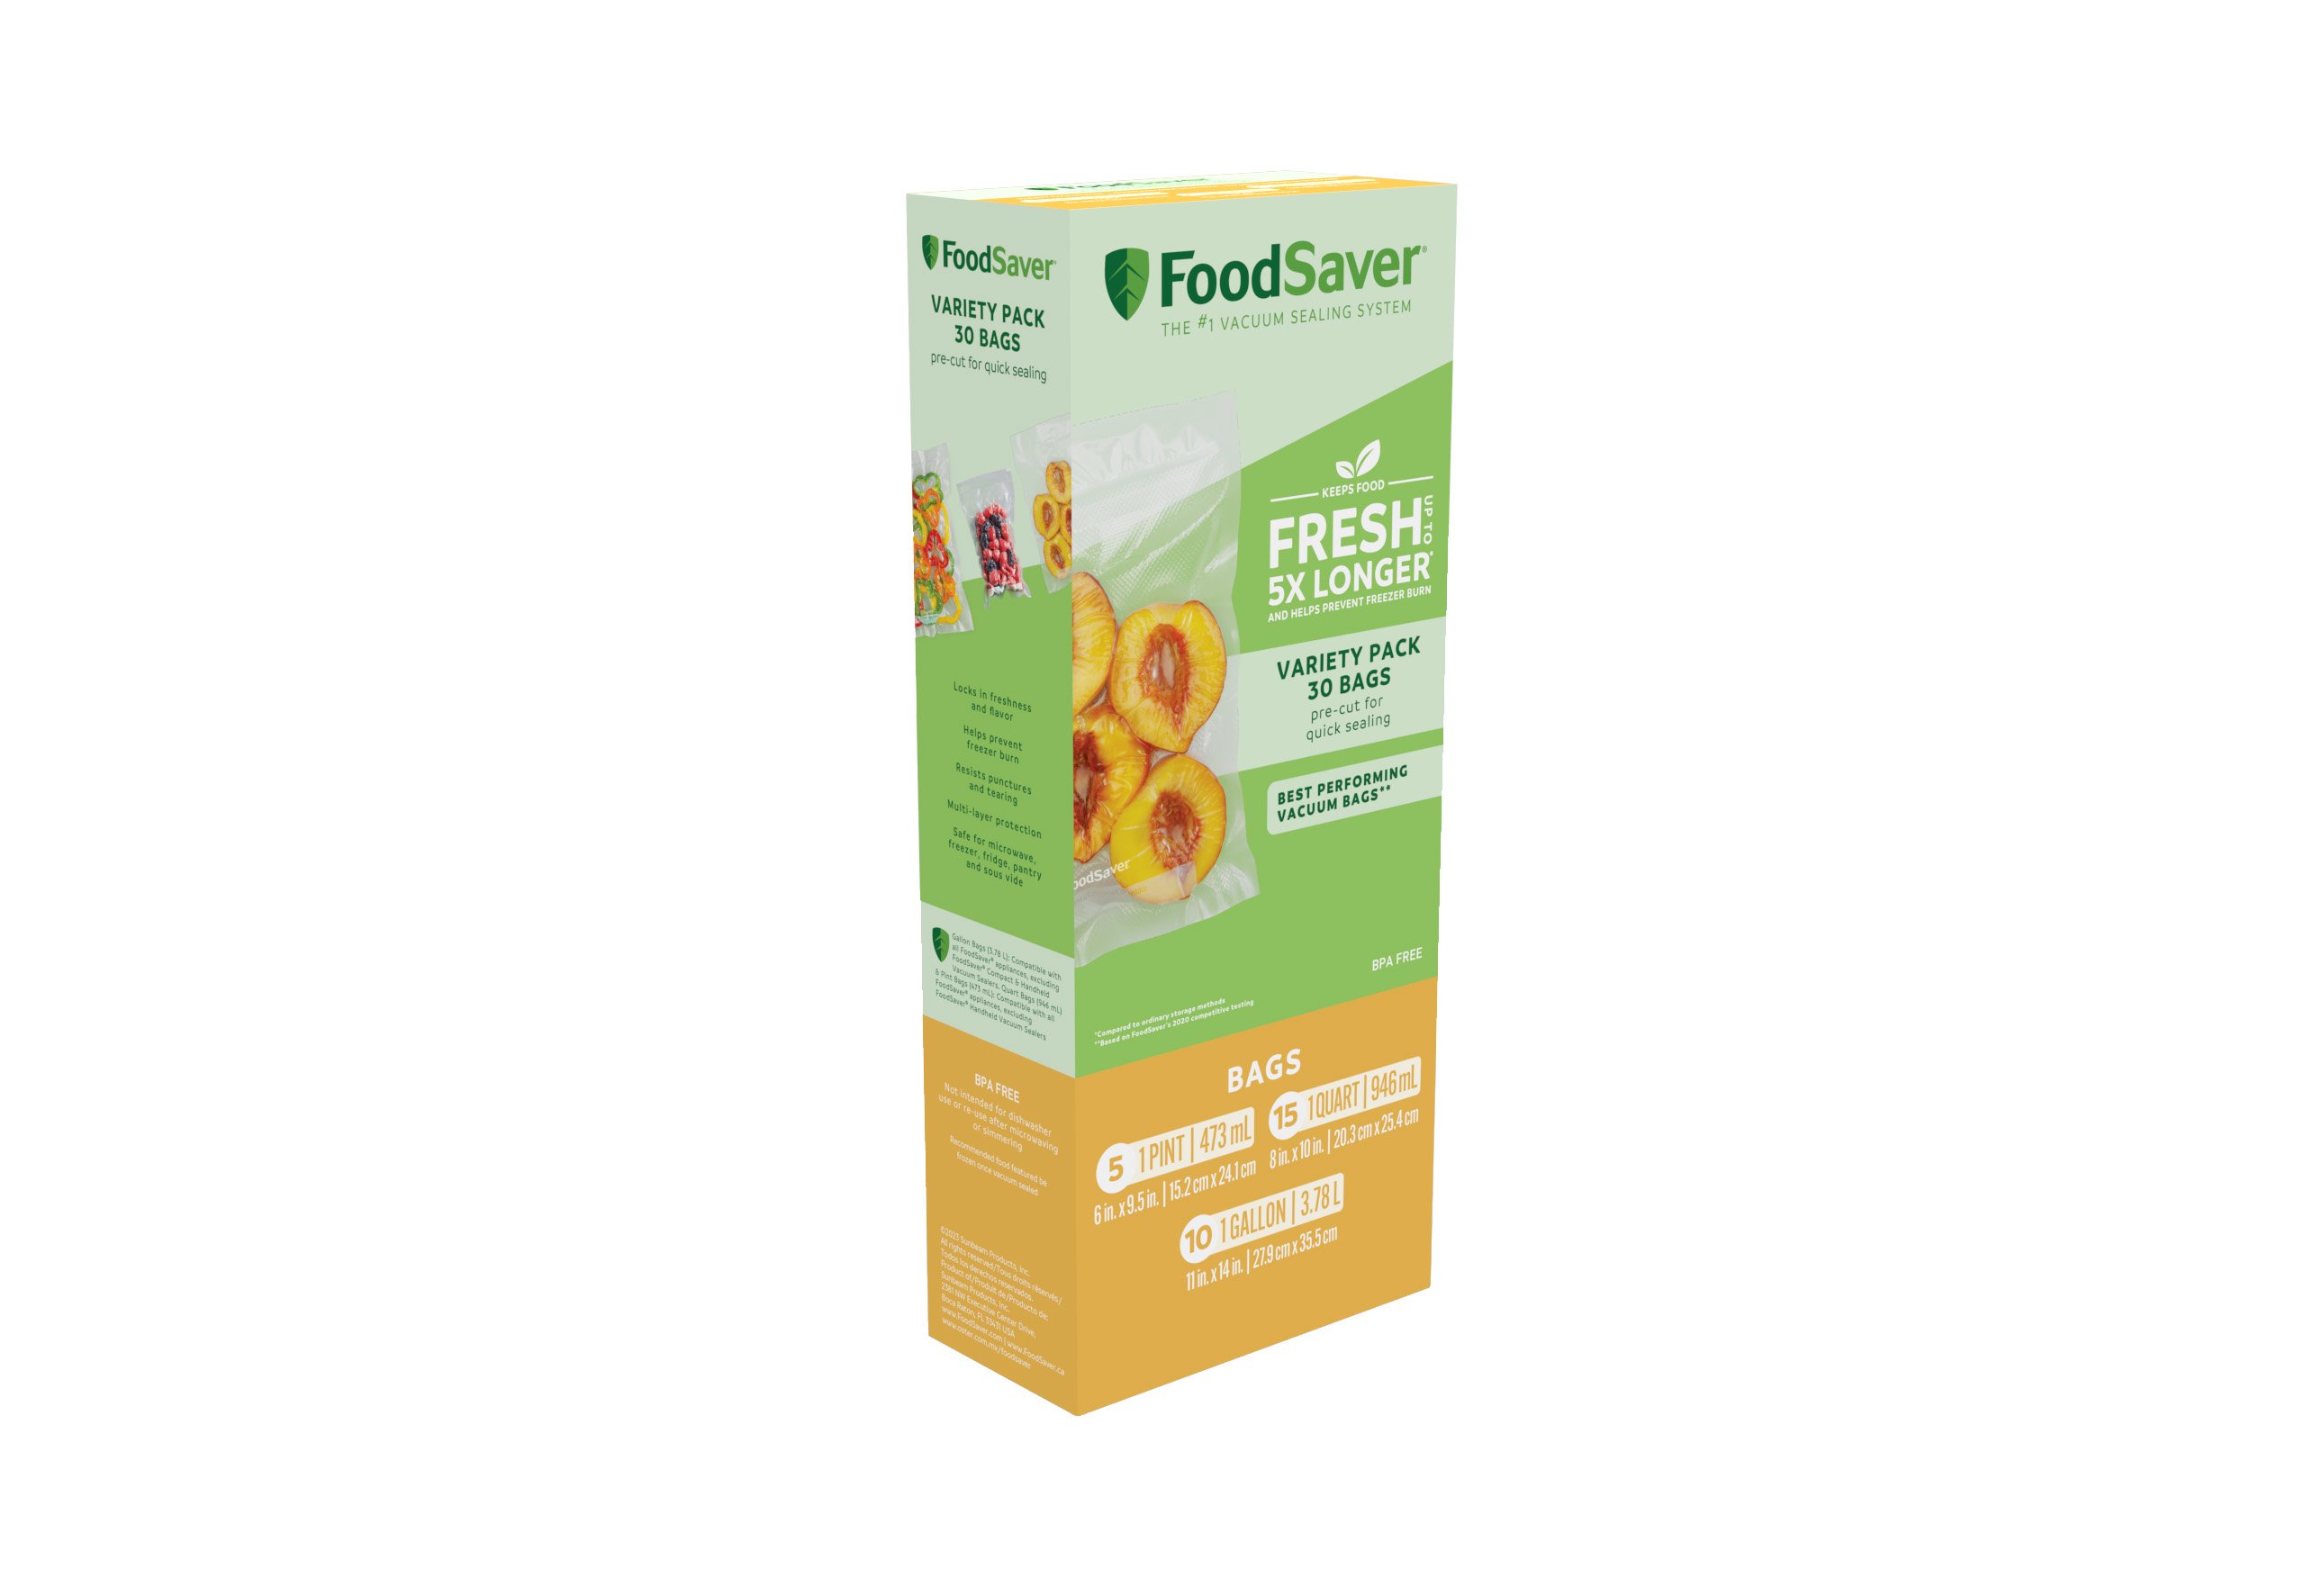 FoodSaver Easy Fill Gal. Vacuum Sealer Bags (10-Count) - Pryor Lumber